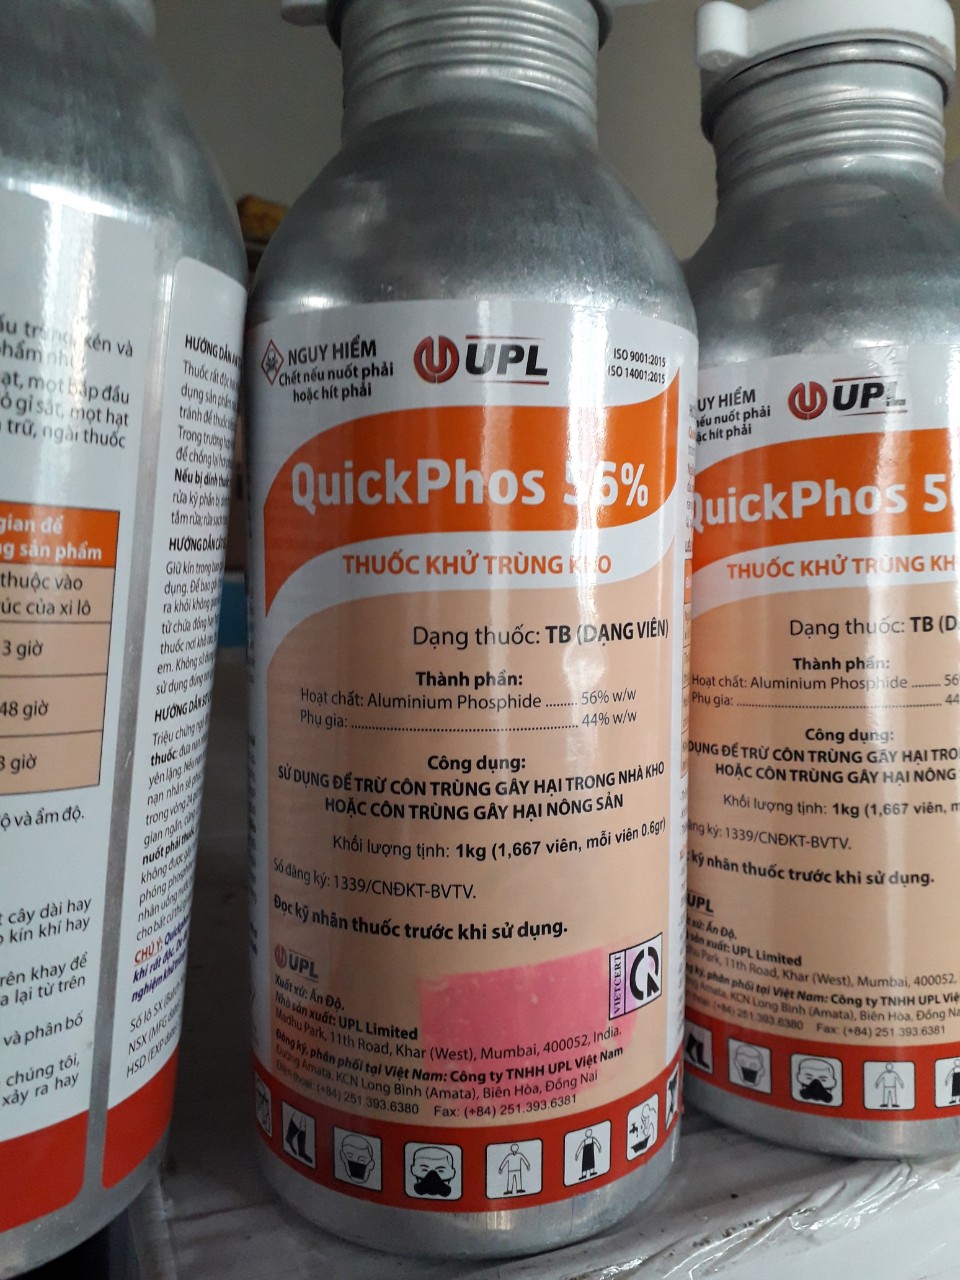 Thuốc khử trùng nông sản QuickPhos 56% chai 1kg